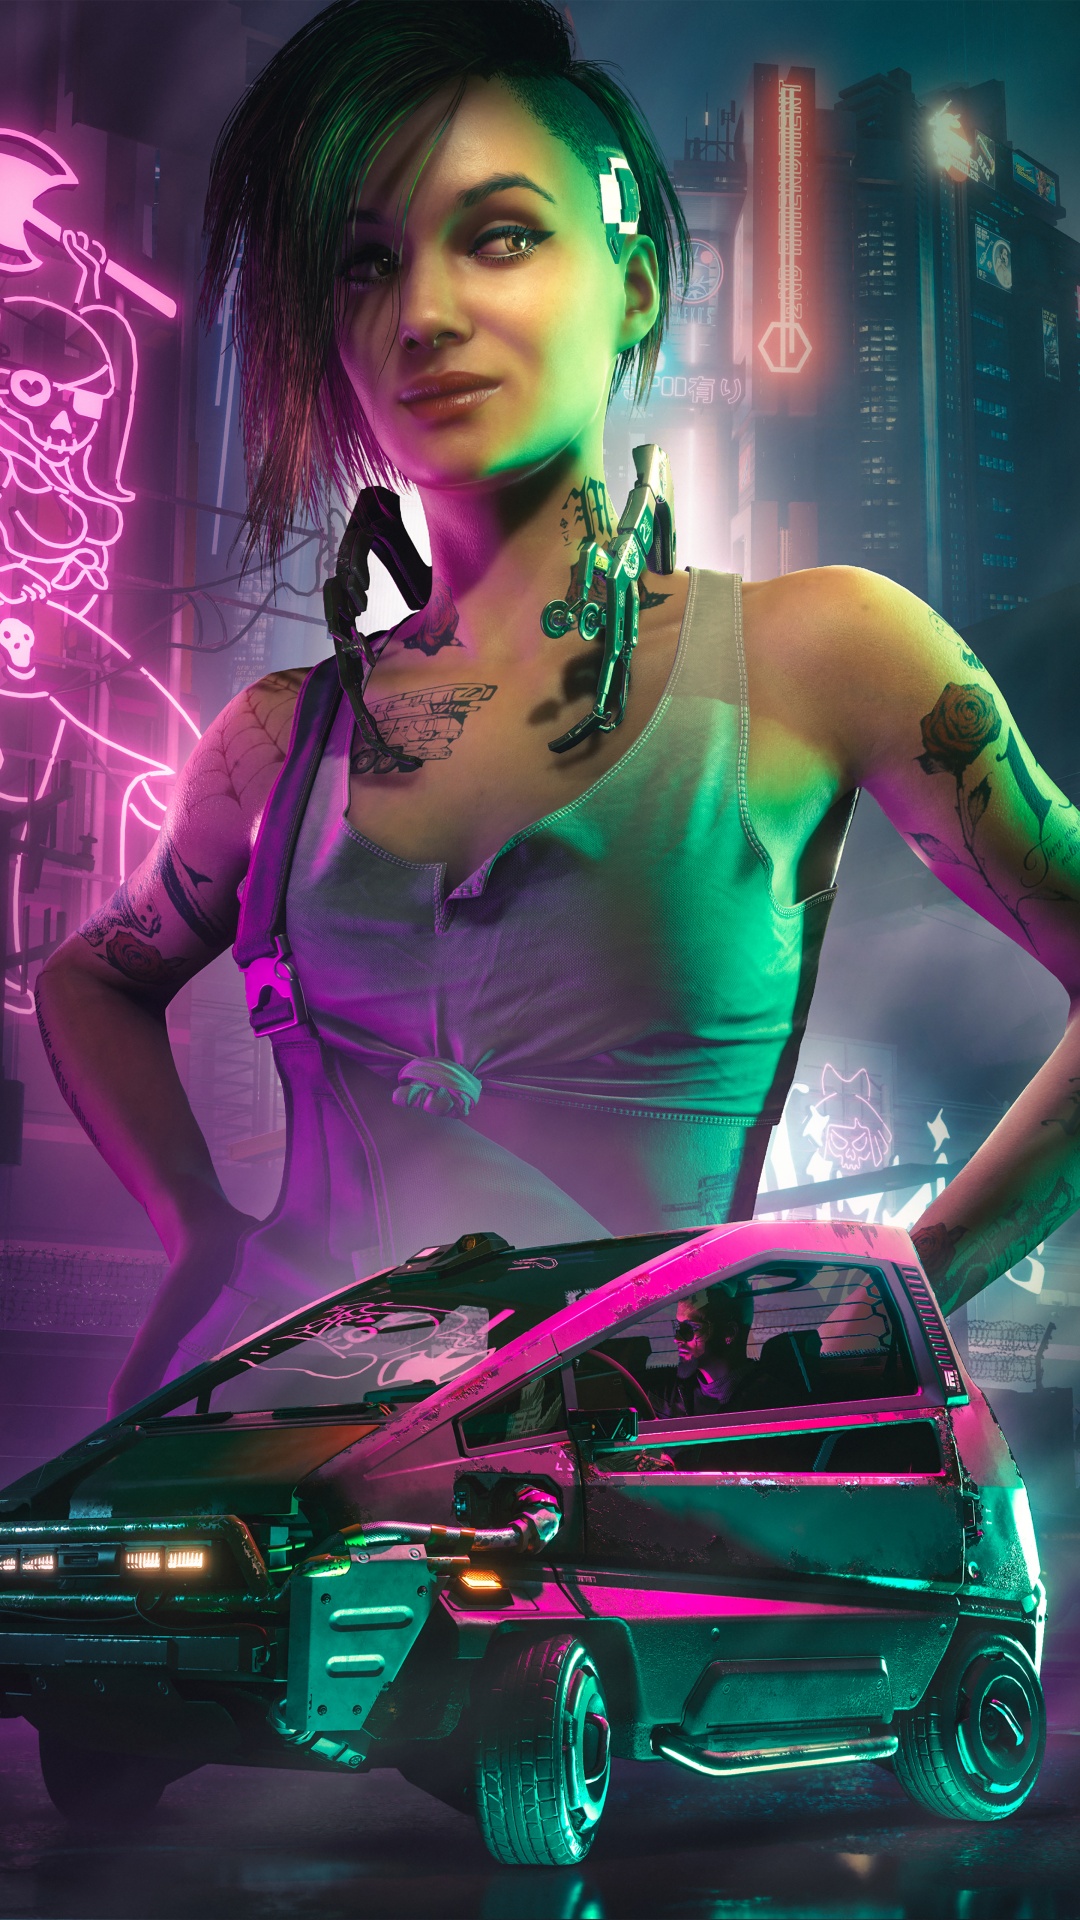 judy cyberpunk 2077 wallpaper